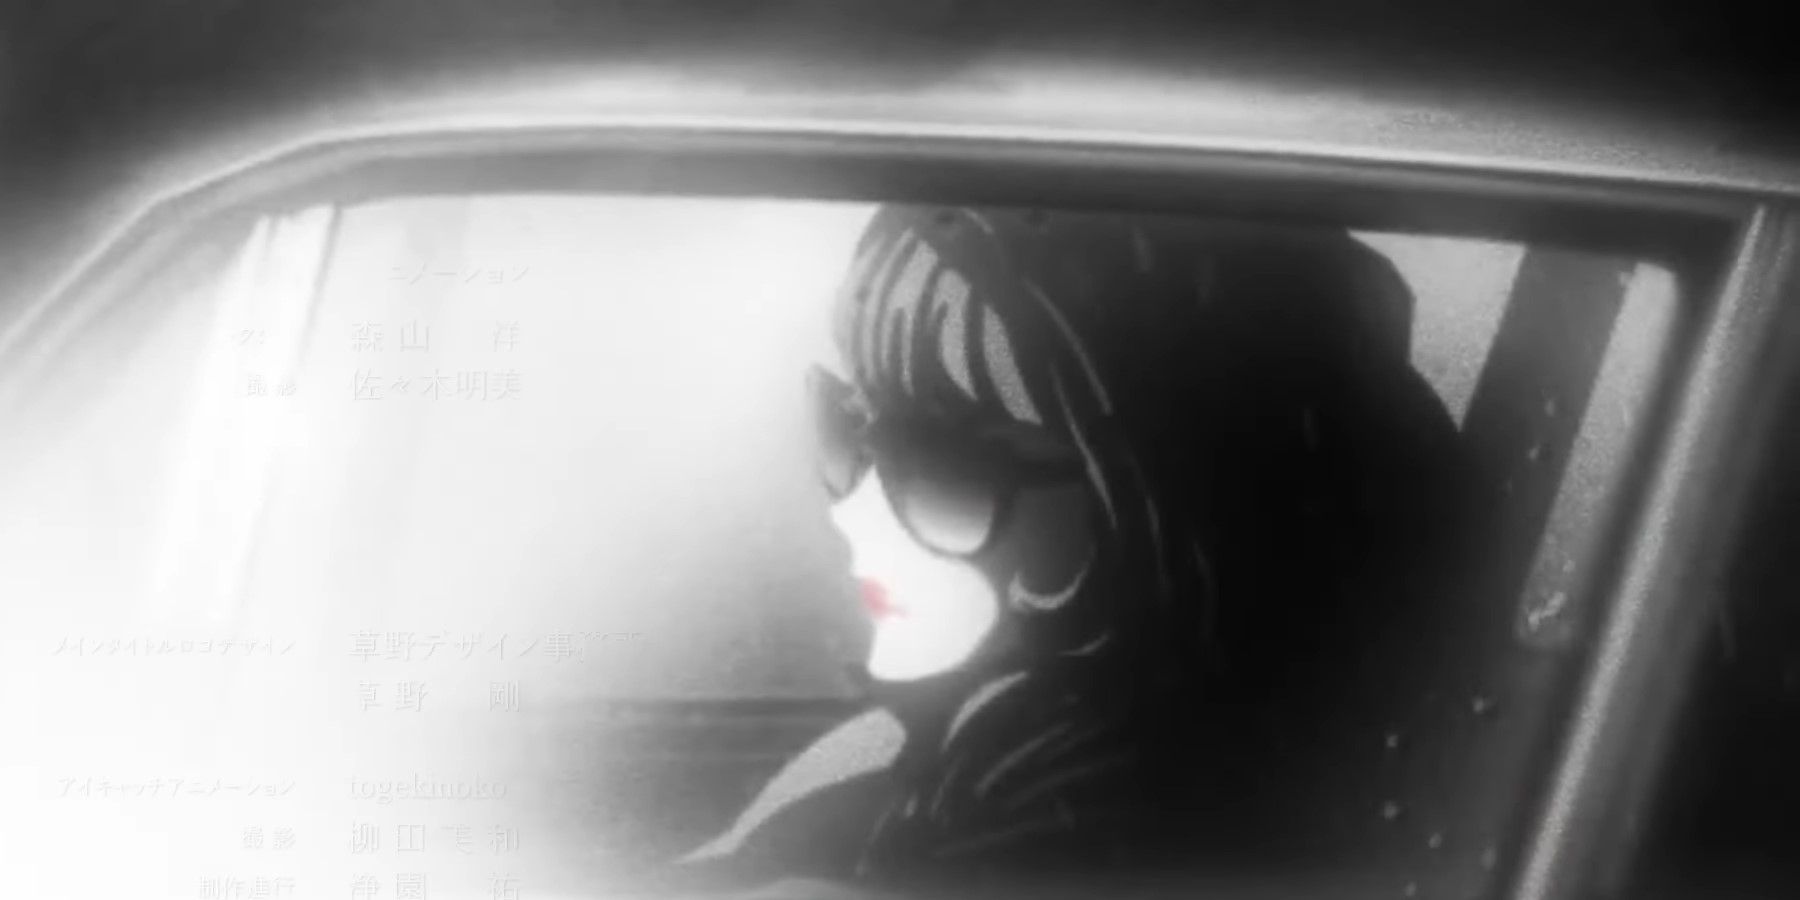 Lupin Part 6 Fujiko Mine in a car